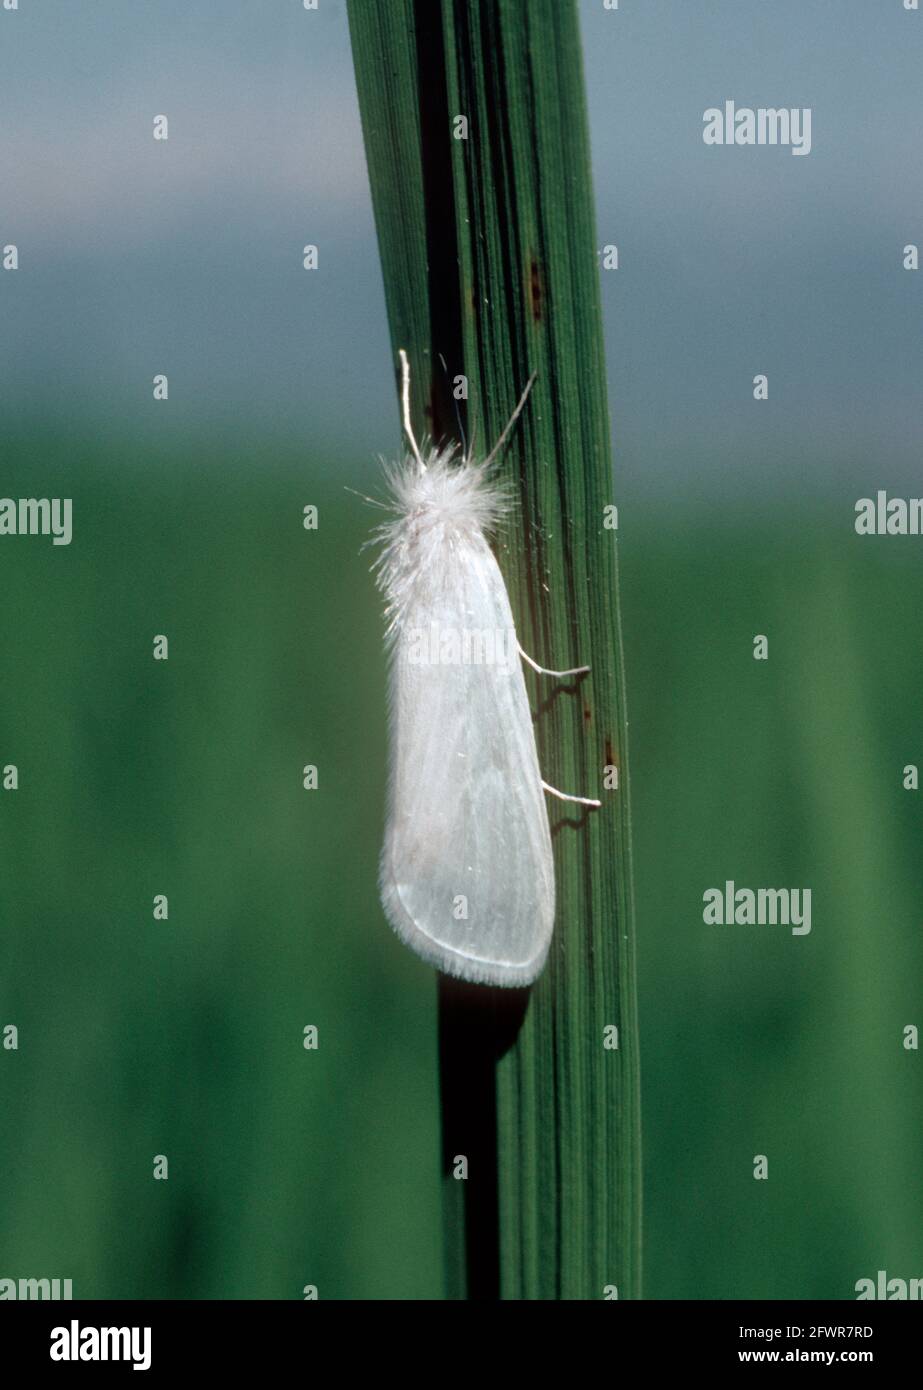 Südamerikanische Weißstielbohrer (Rupela albinella) Motte auf einem Reisblatt in einer Ernte, Kolumbien Stockfoto